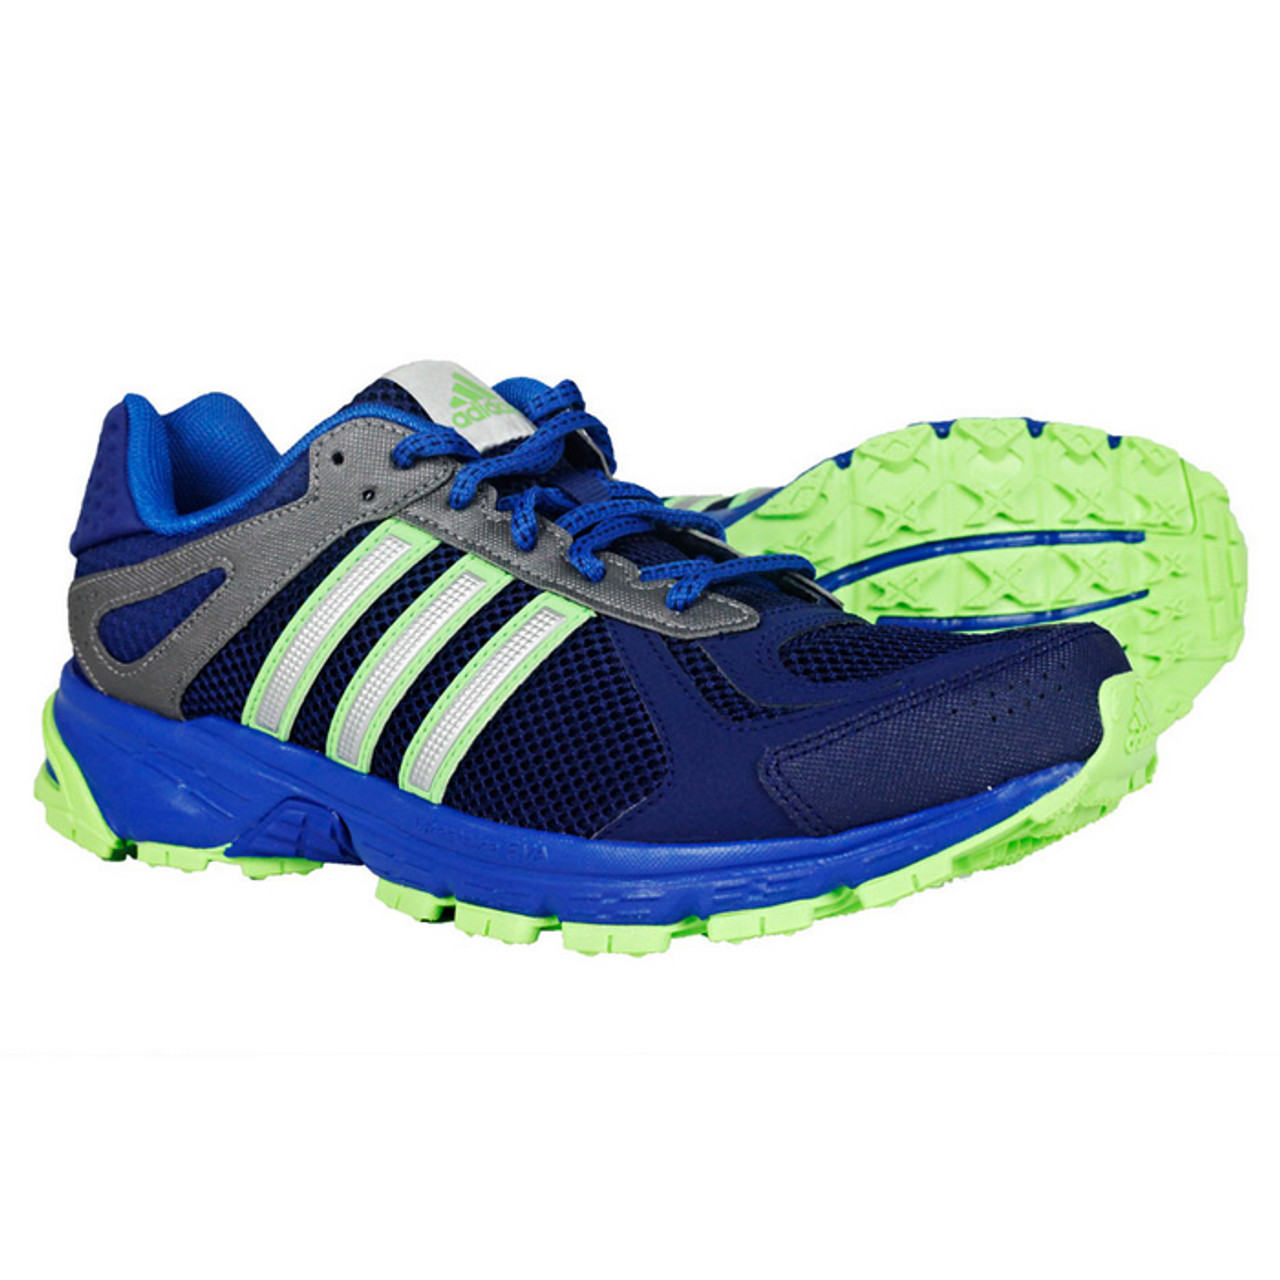 Adidas Duramo TR Blue/Green Mens Running Shoes - | Discount Men's Athletic Shoes & More - Shoolu.com | Shoolu.com